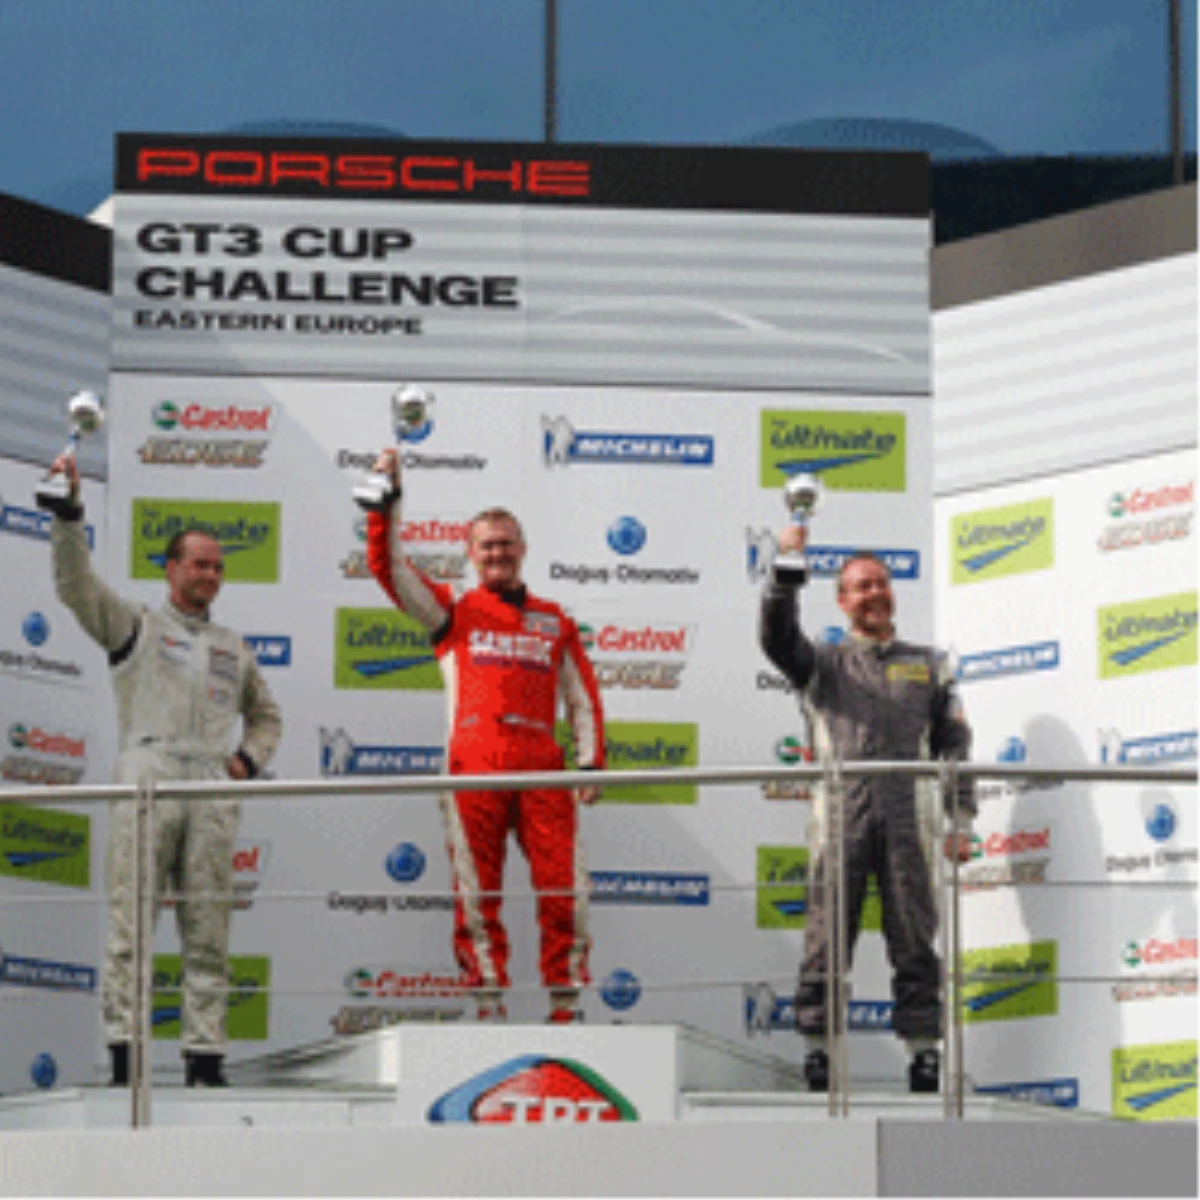 Porsche Gt3 Cup Challenge Eastern Europe Başladı

